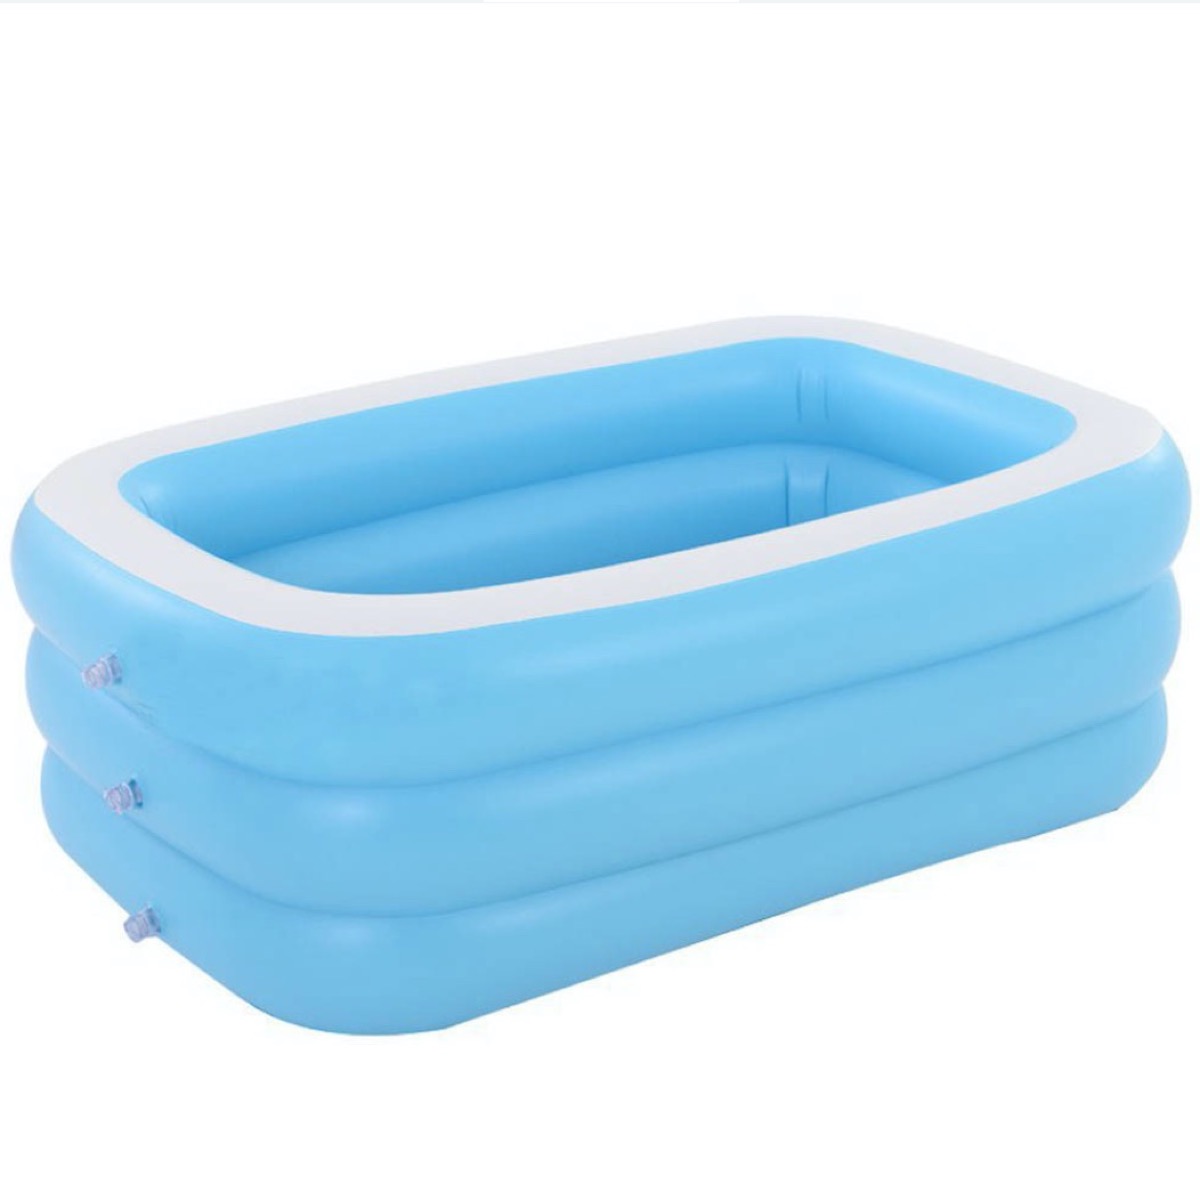 blue inflatable kiddie pool